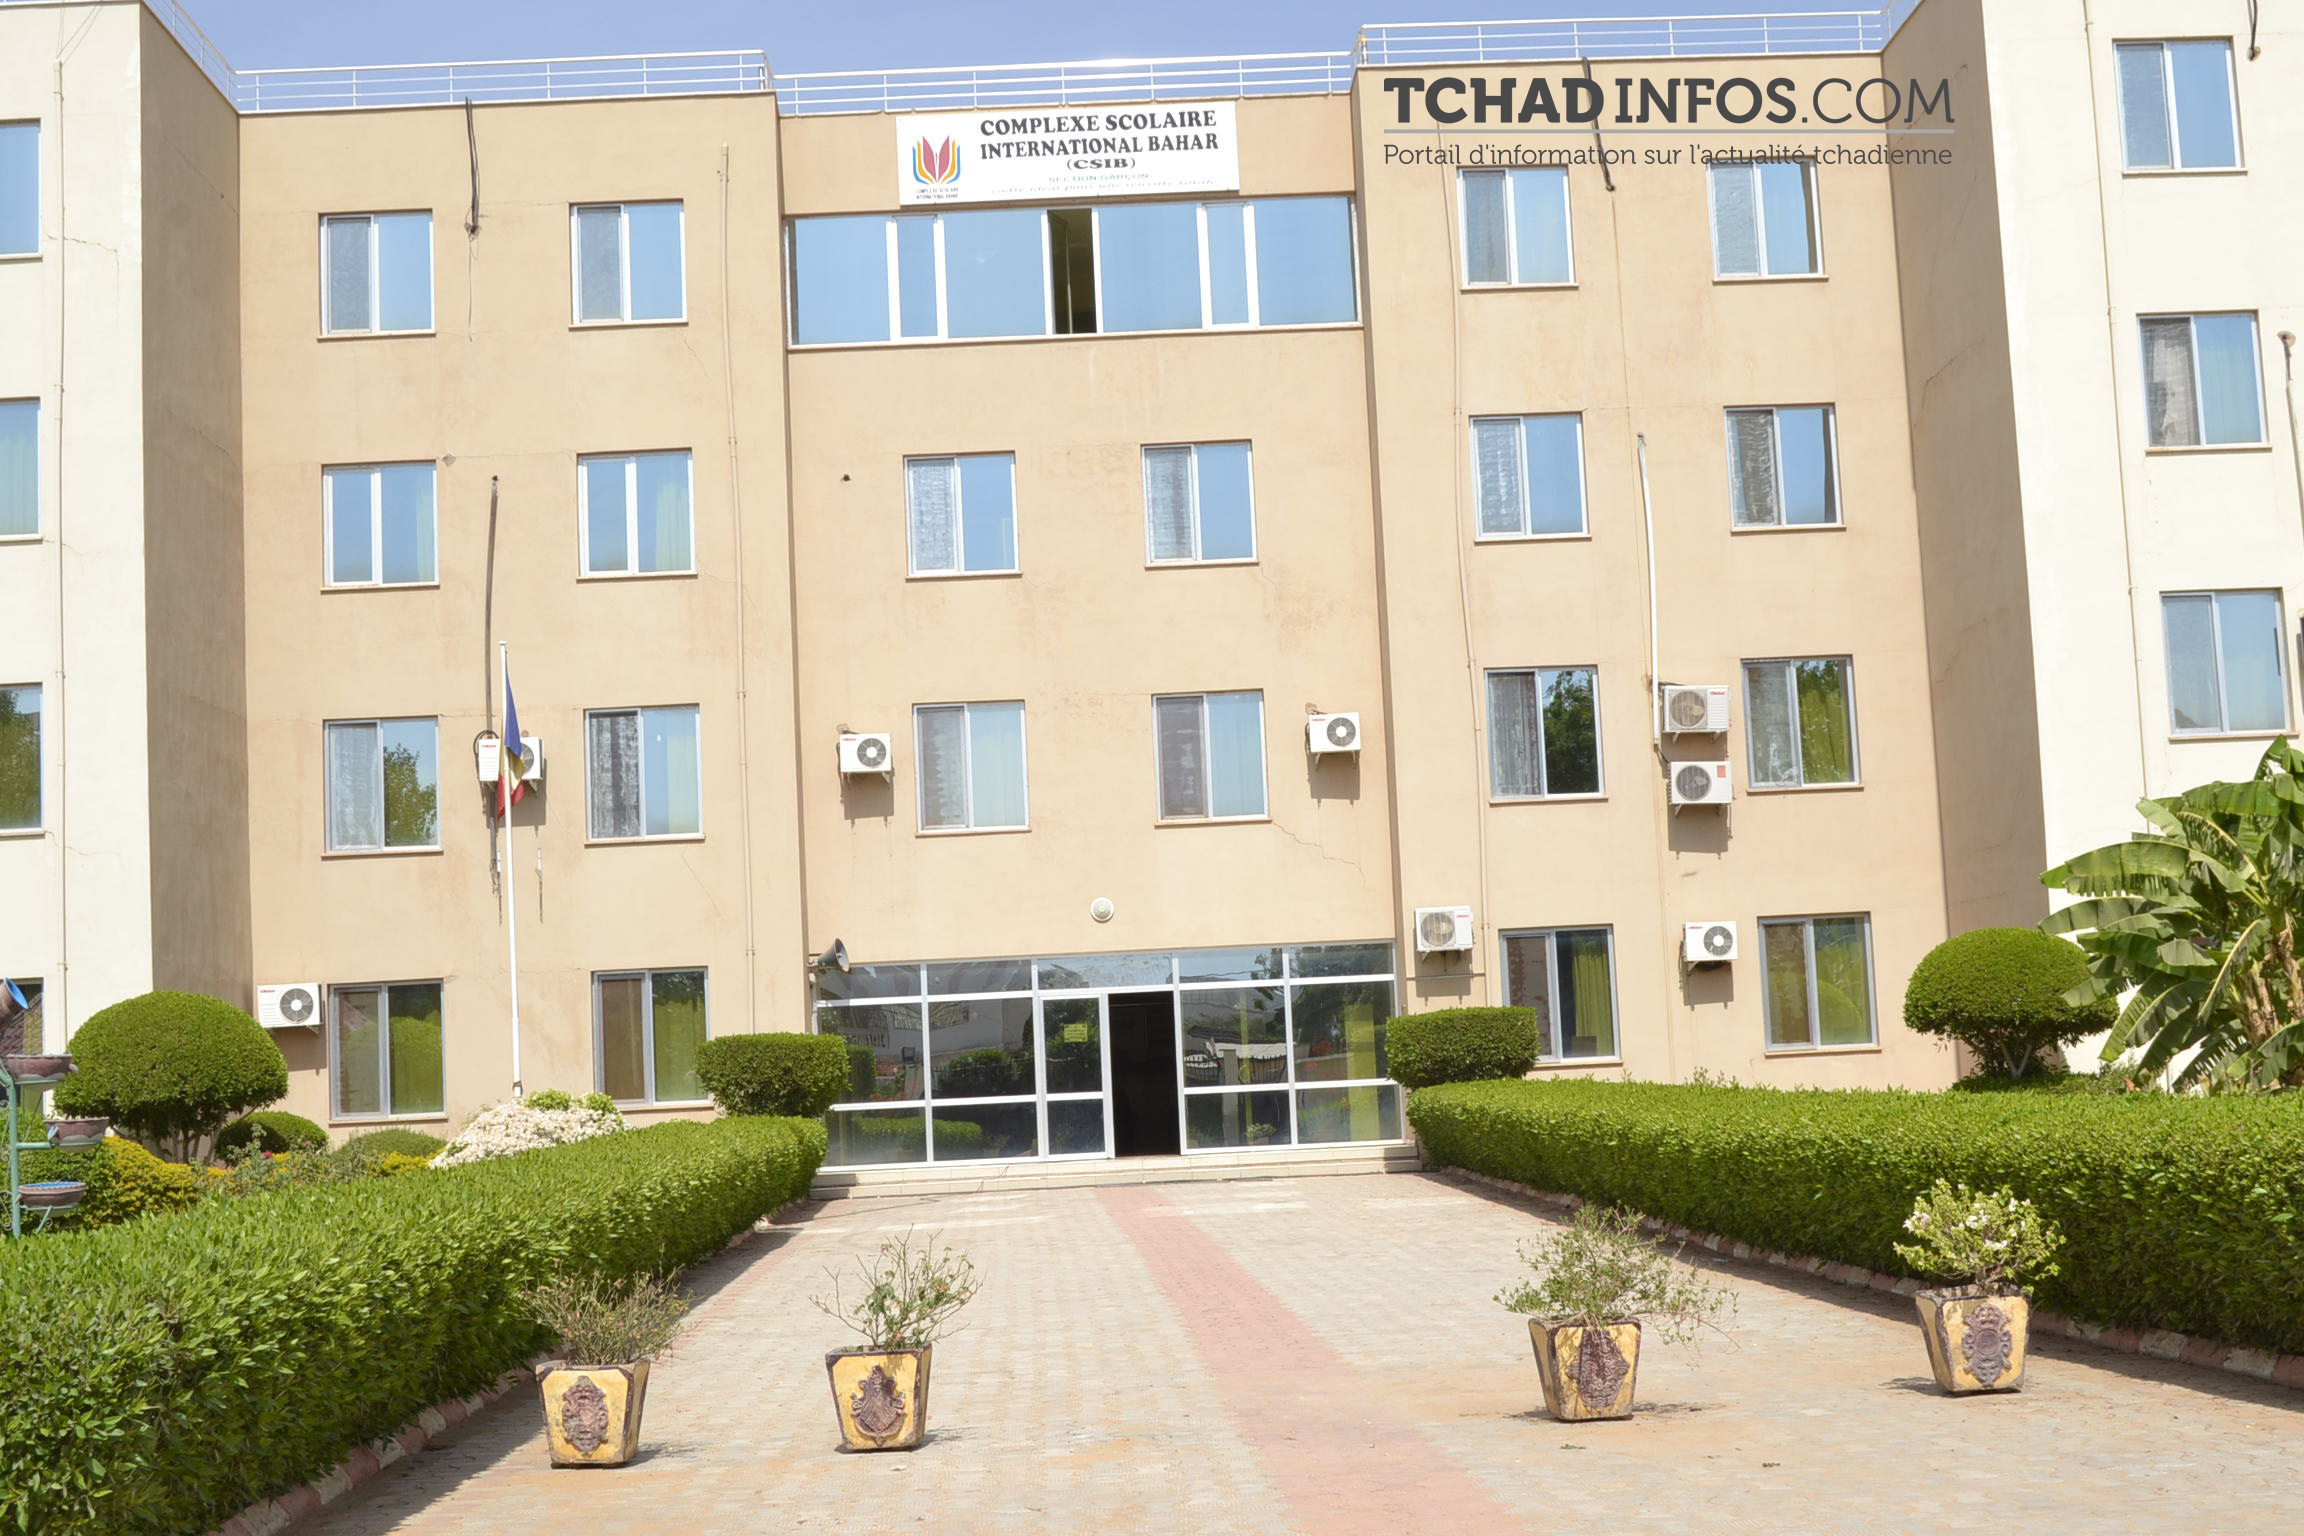 Tchad : l’État donne le Complexe scolaire Bahar à la fondation “Maarif” à la veille de l’arrivée d’Erdogan